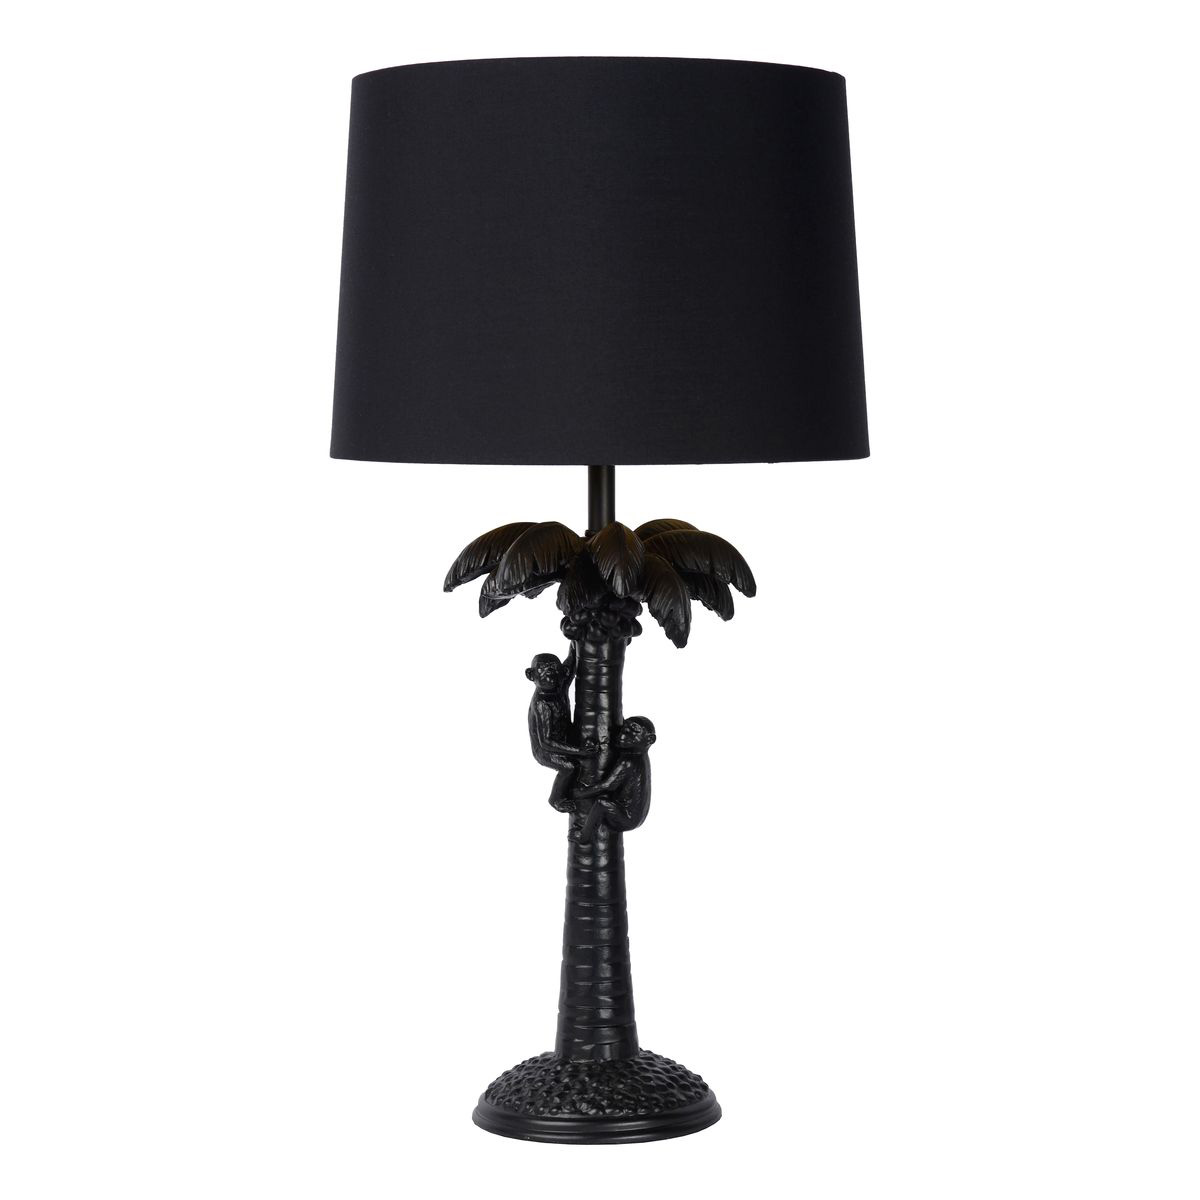 Настольная лампа Monkeys on a palm table lamp black